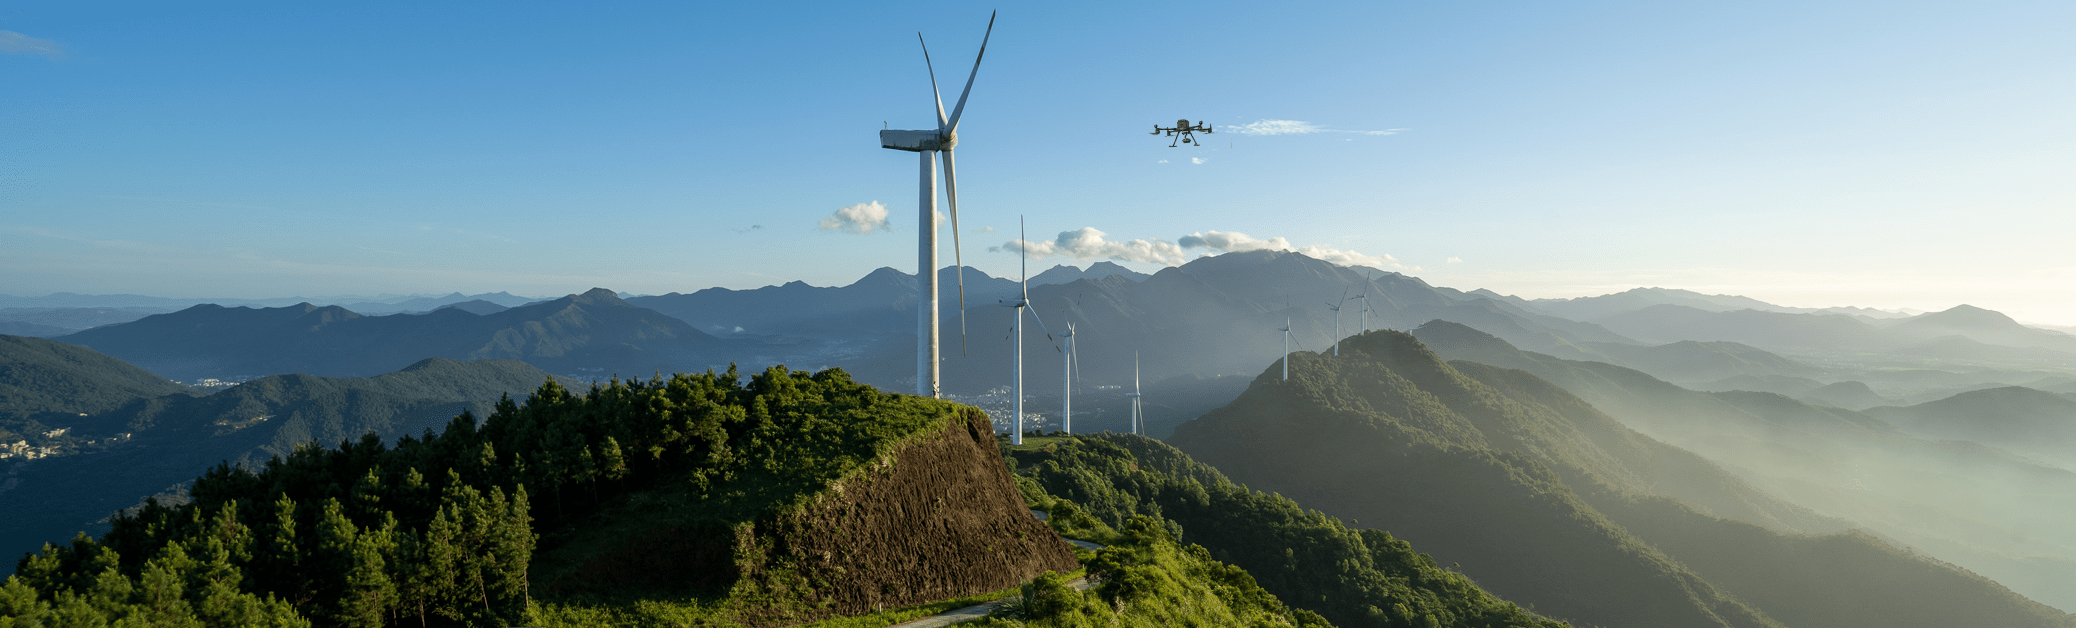 Применение дронов DJI для инспекции ветрогенераторов - Экология